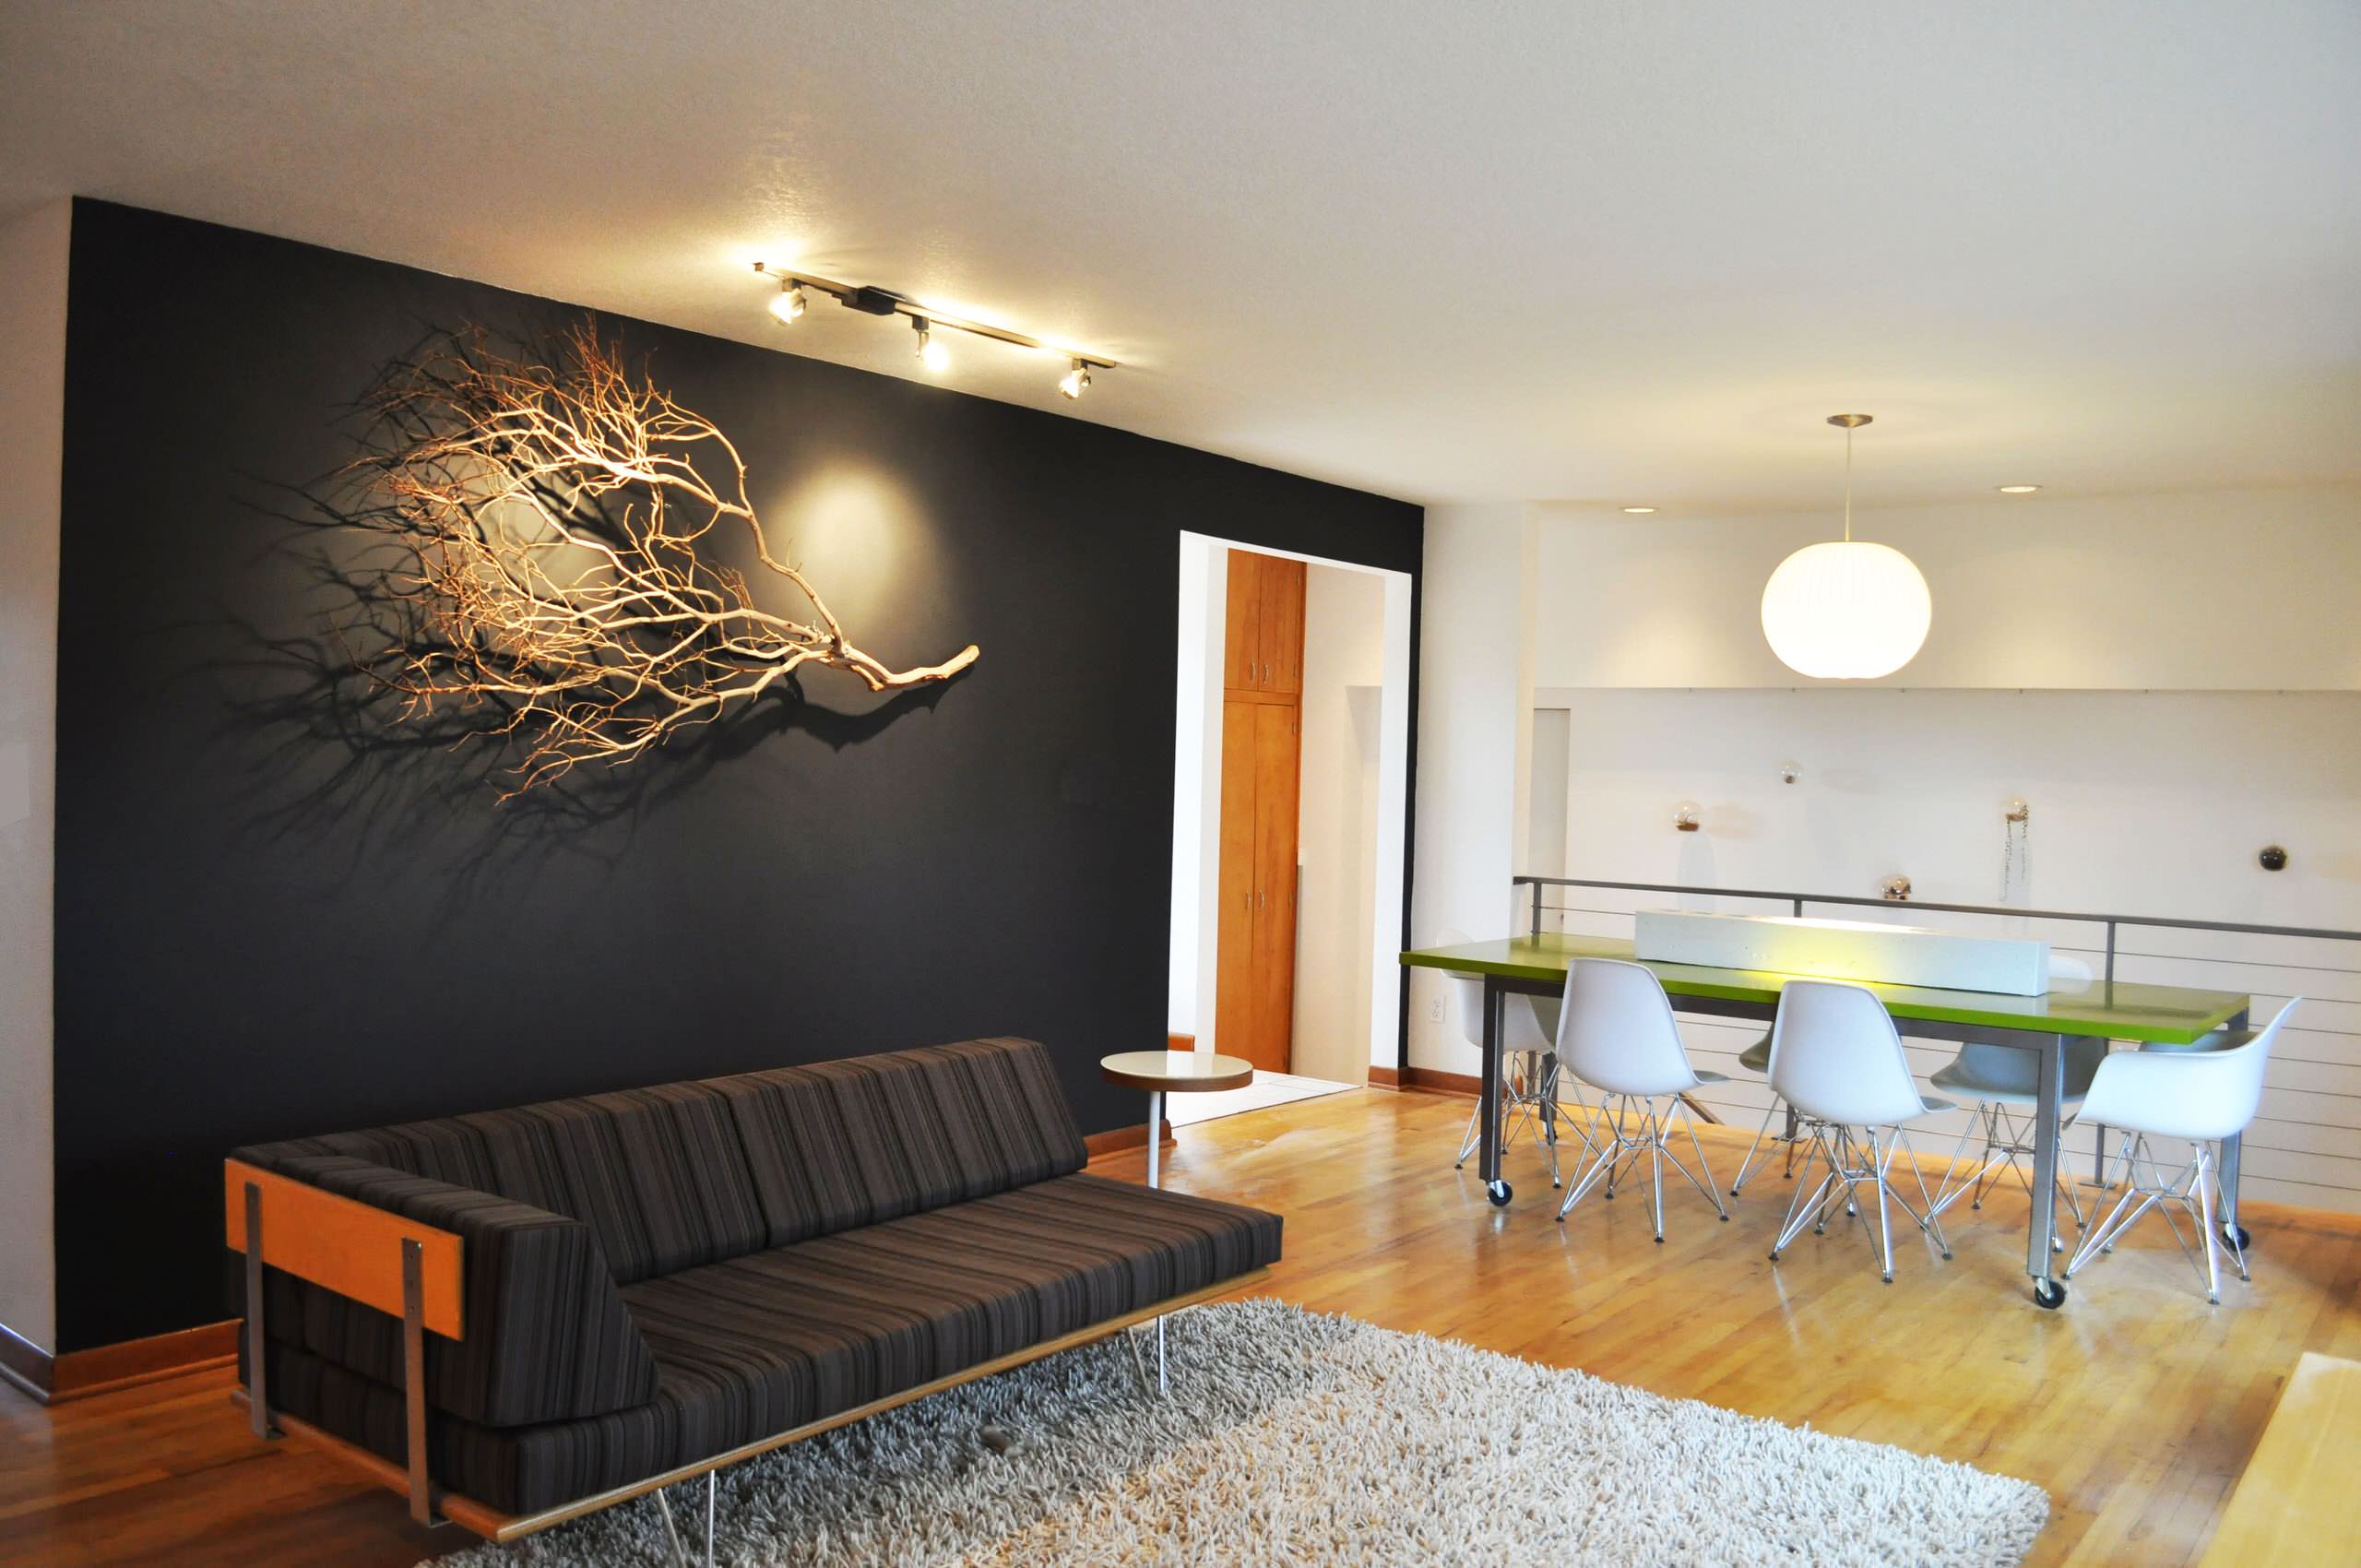 Эксклюзивный интерьер гостиной с помощью декоративного украшения на стене